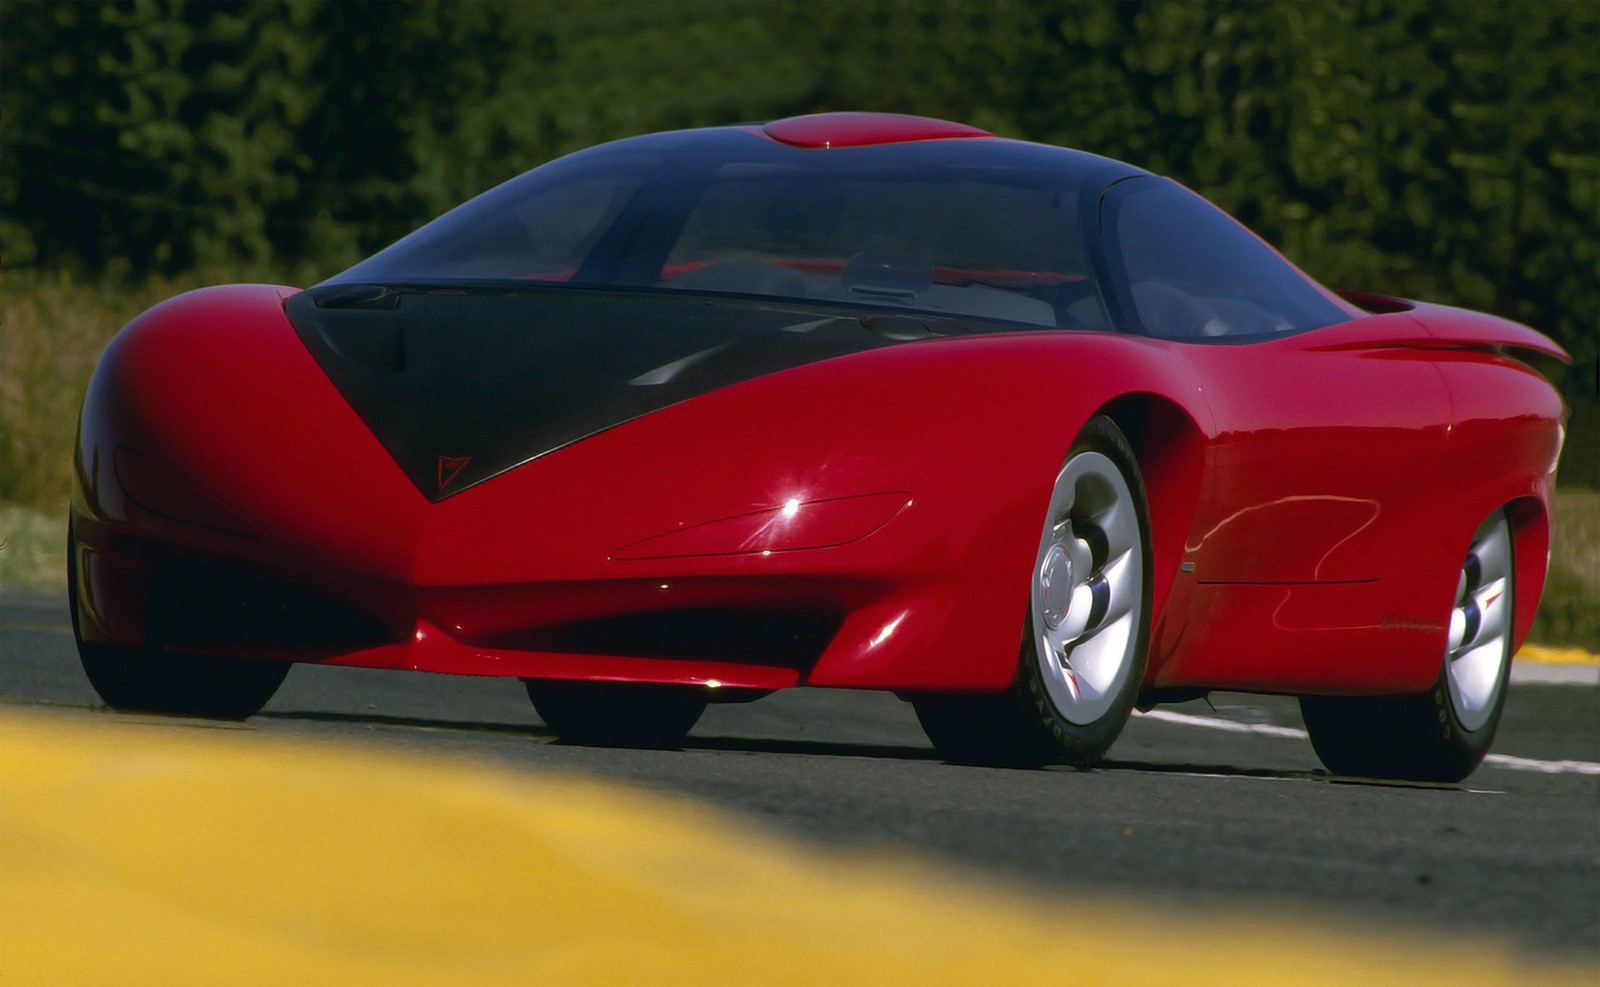 1988 Pontiac Banshee IV Concept, Pontiac, Pontiac Banshee